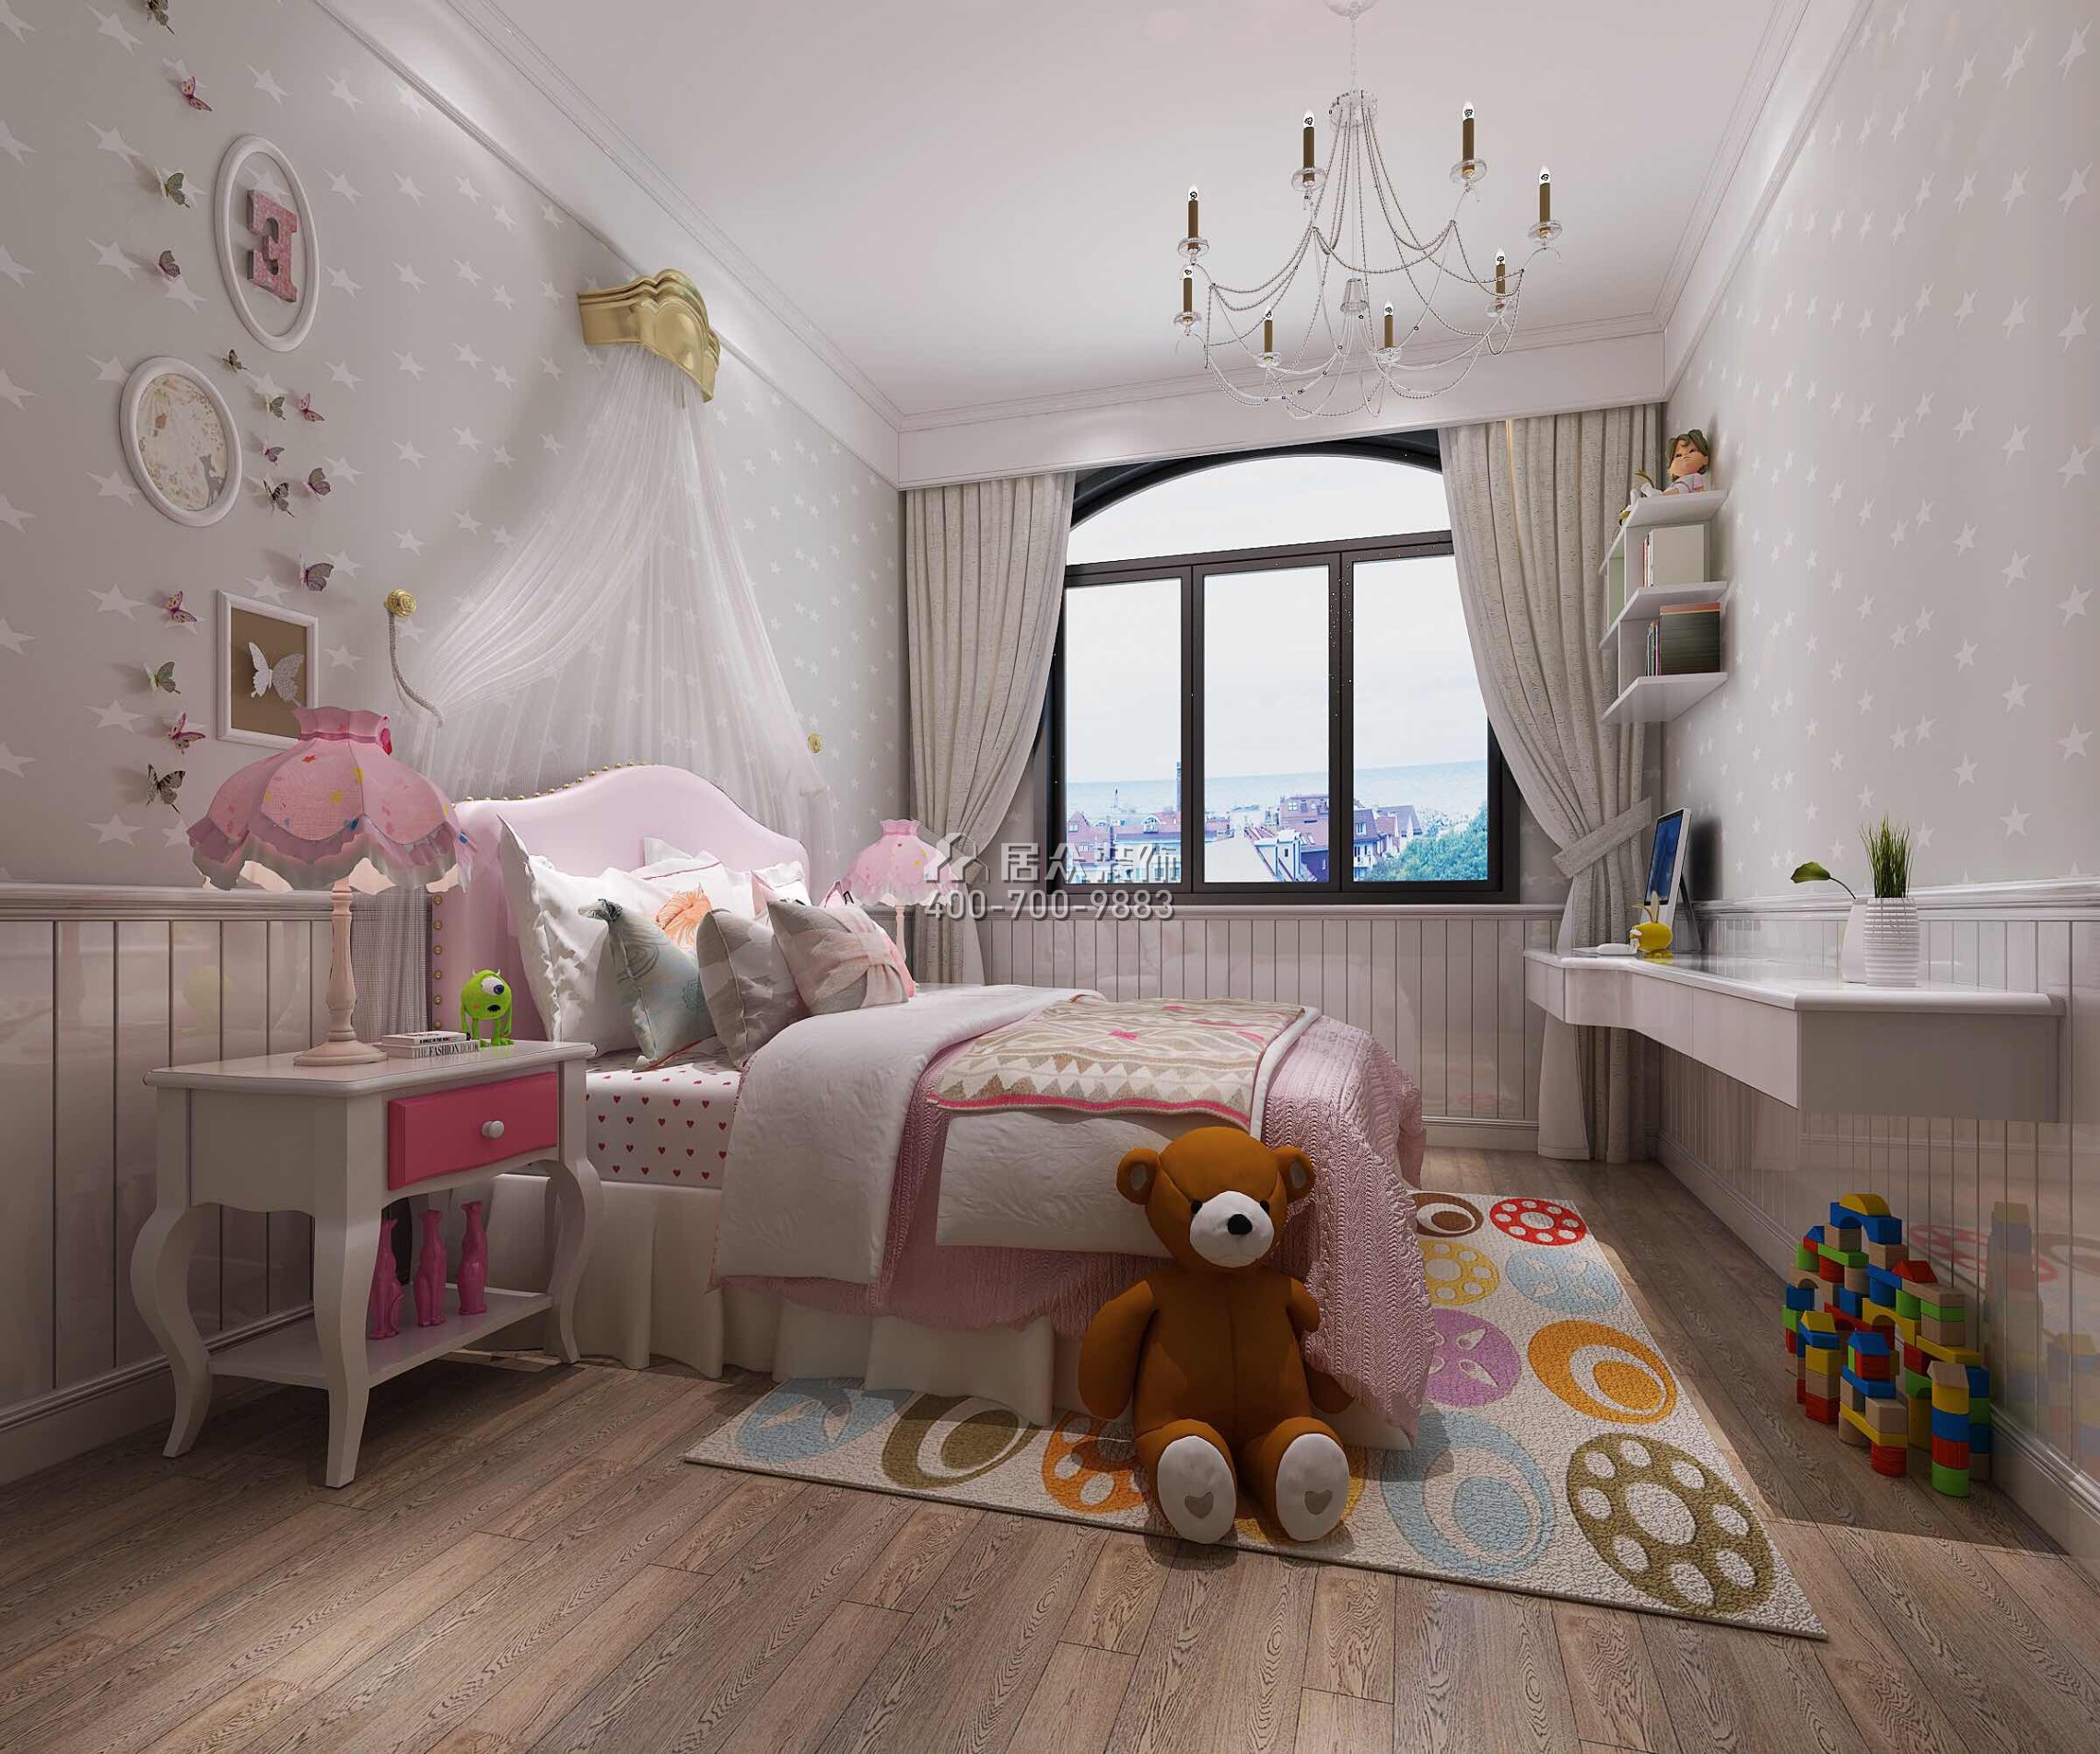 龍光水悅龍灣500平方米現代簡約風格別墅戶型兒童房裝修效果圖